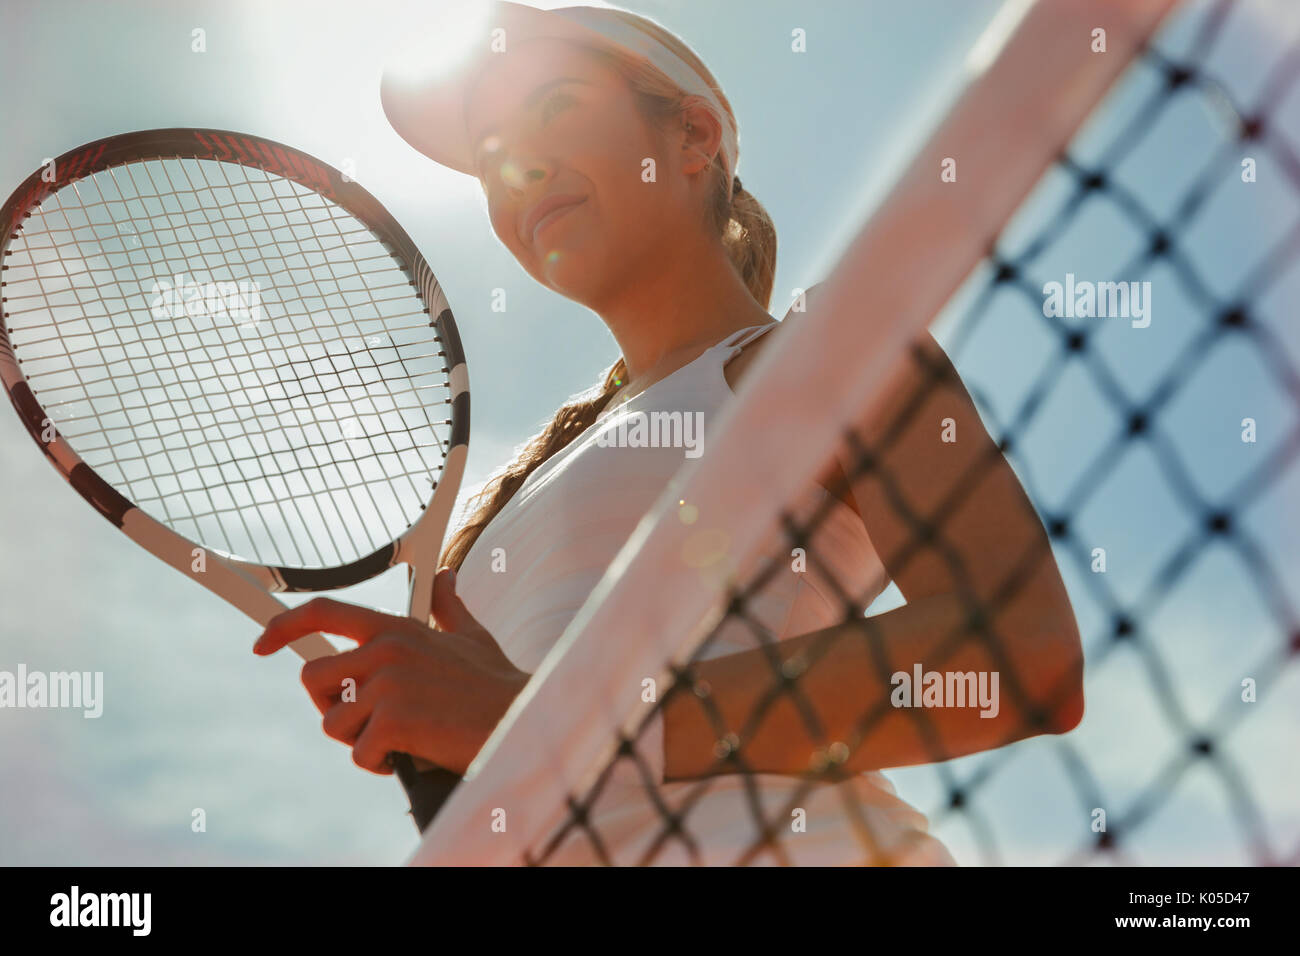 Fiducioso femmina giovane giocatore di tennis holding racchetta da tennis presso la net Foto Stock